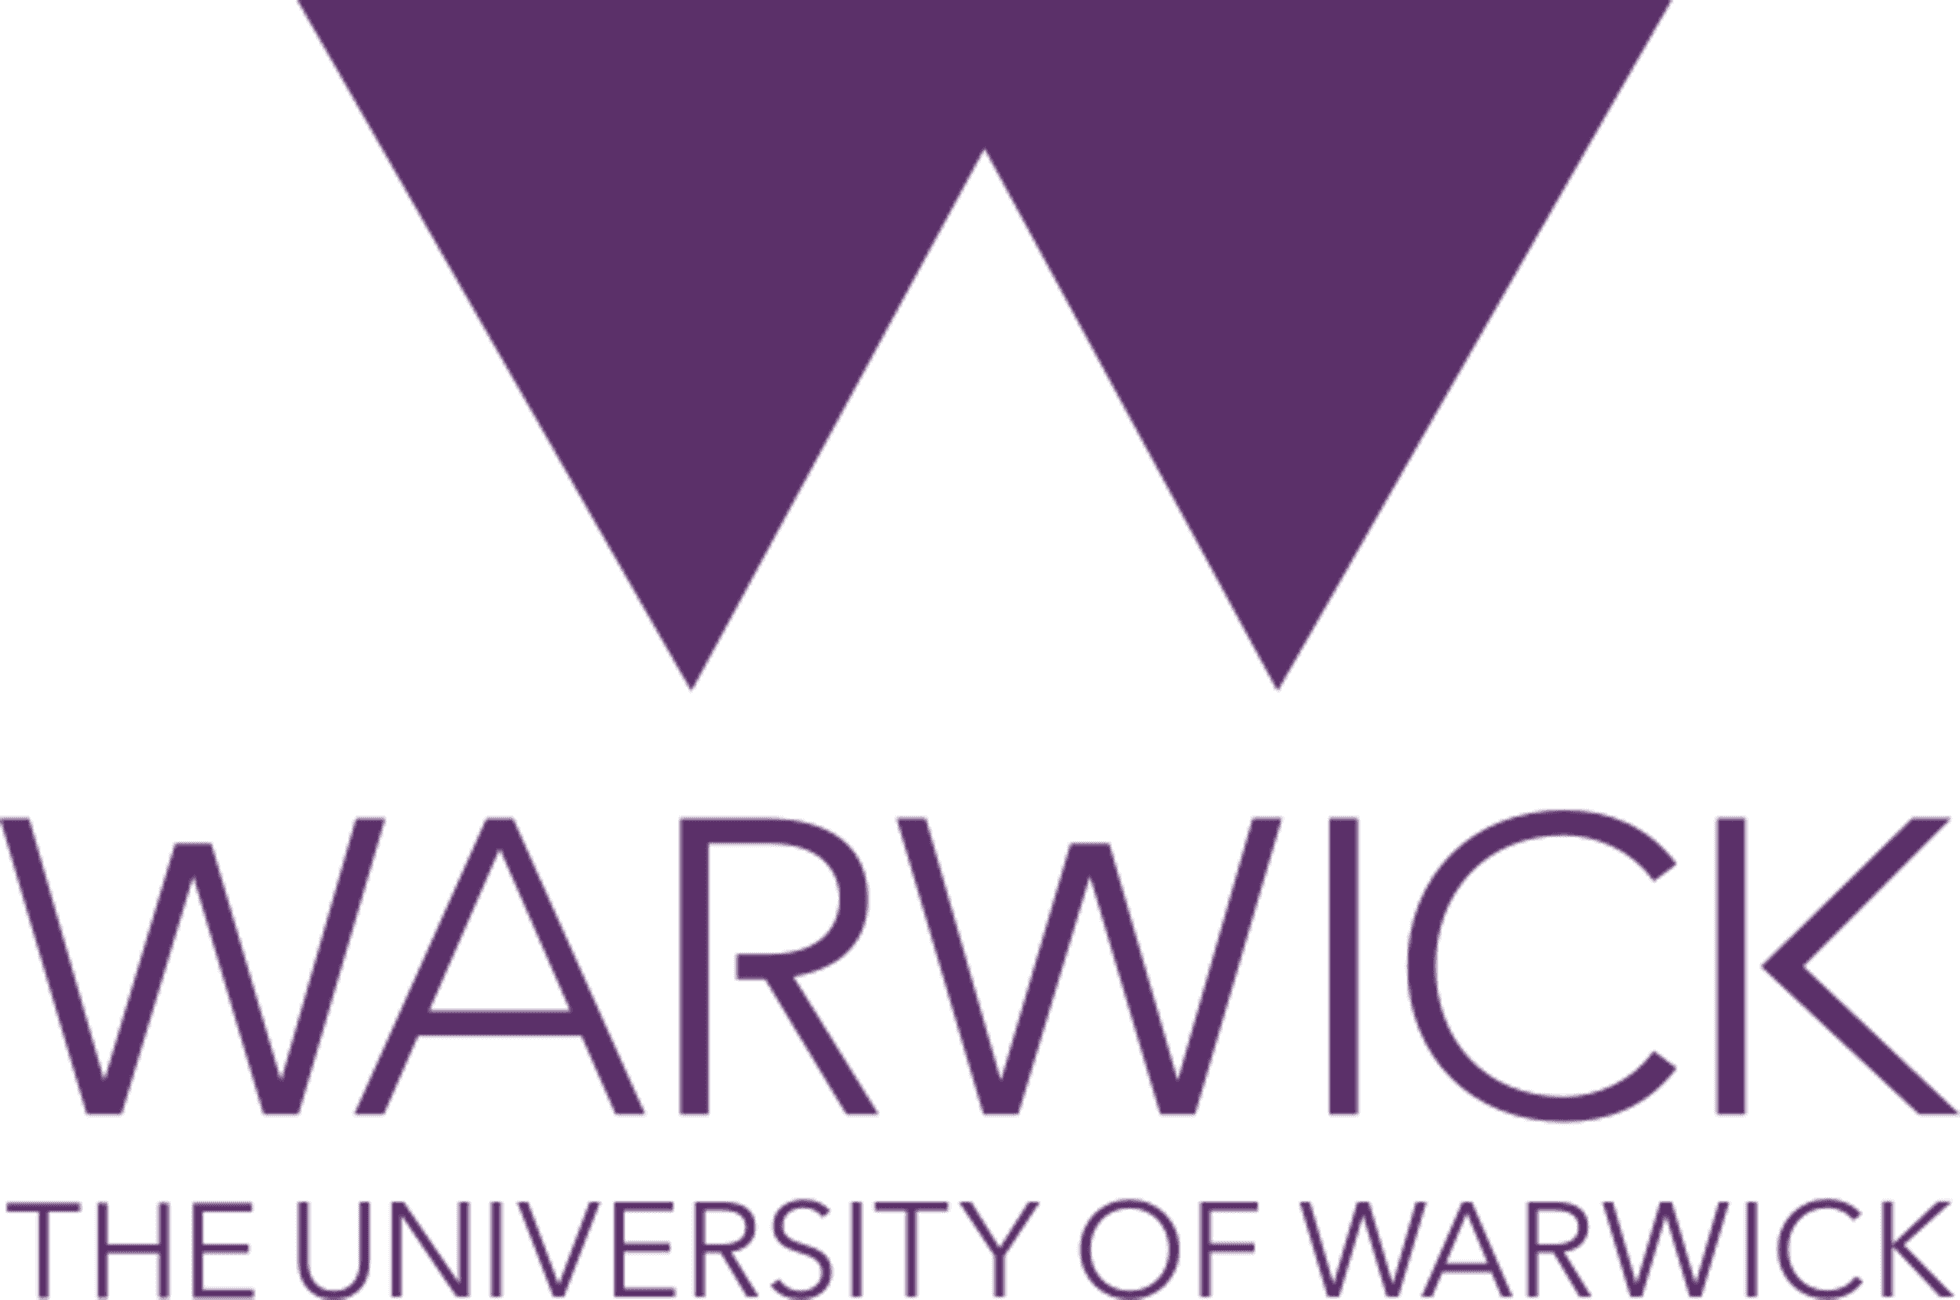 University of warwick logo detail